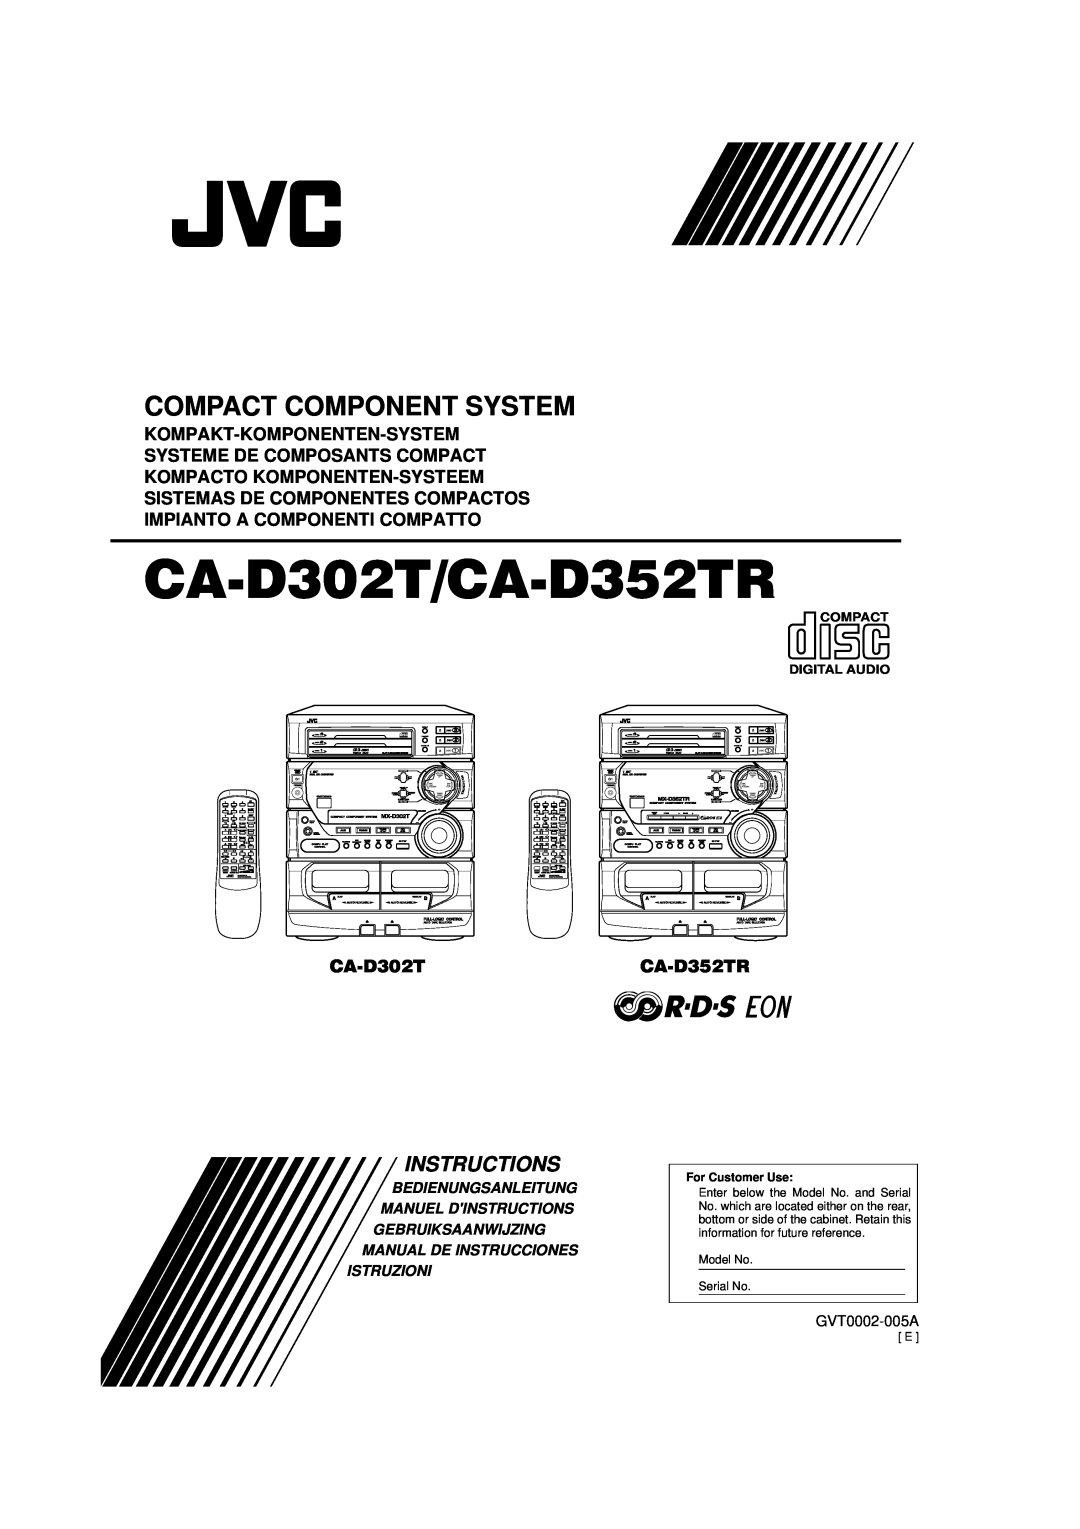 JVC manual Compact Component System, Kompakt-Komponenten-System, Systeme De Composants Compact, CA-D302TCA-D352TR, Disc 